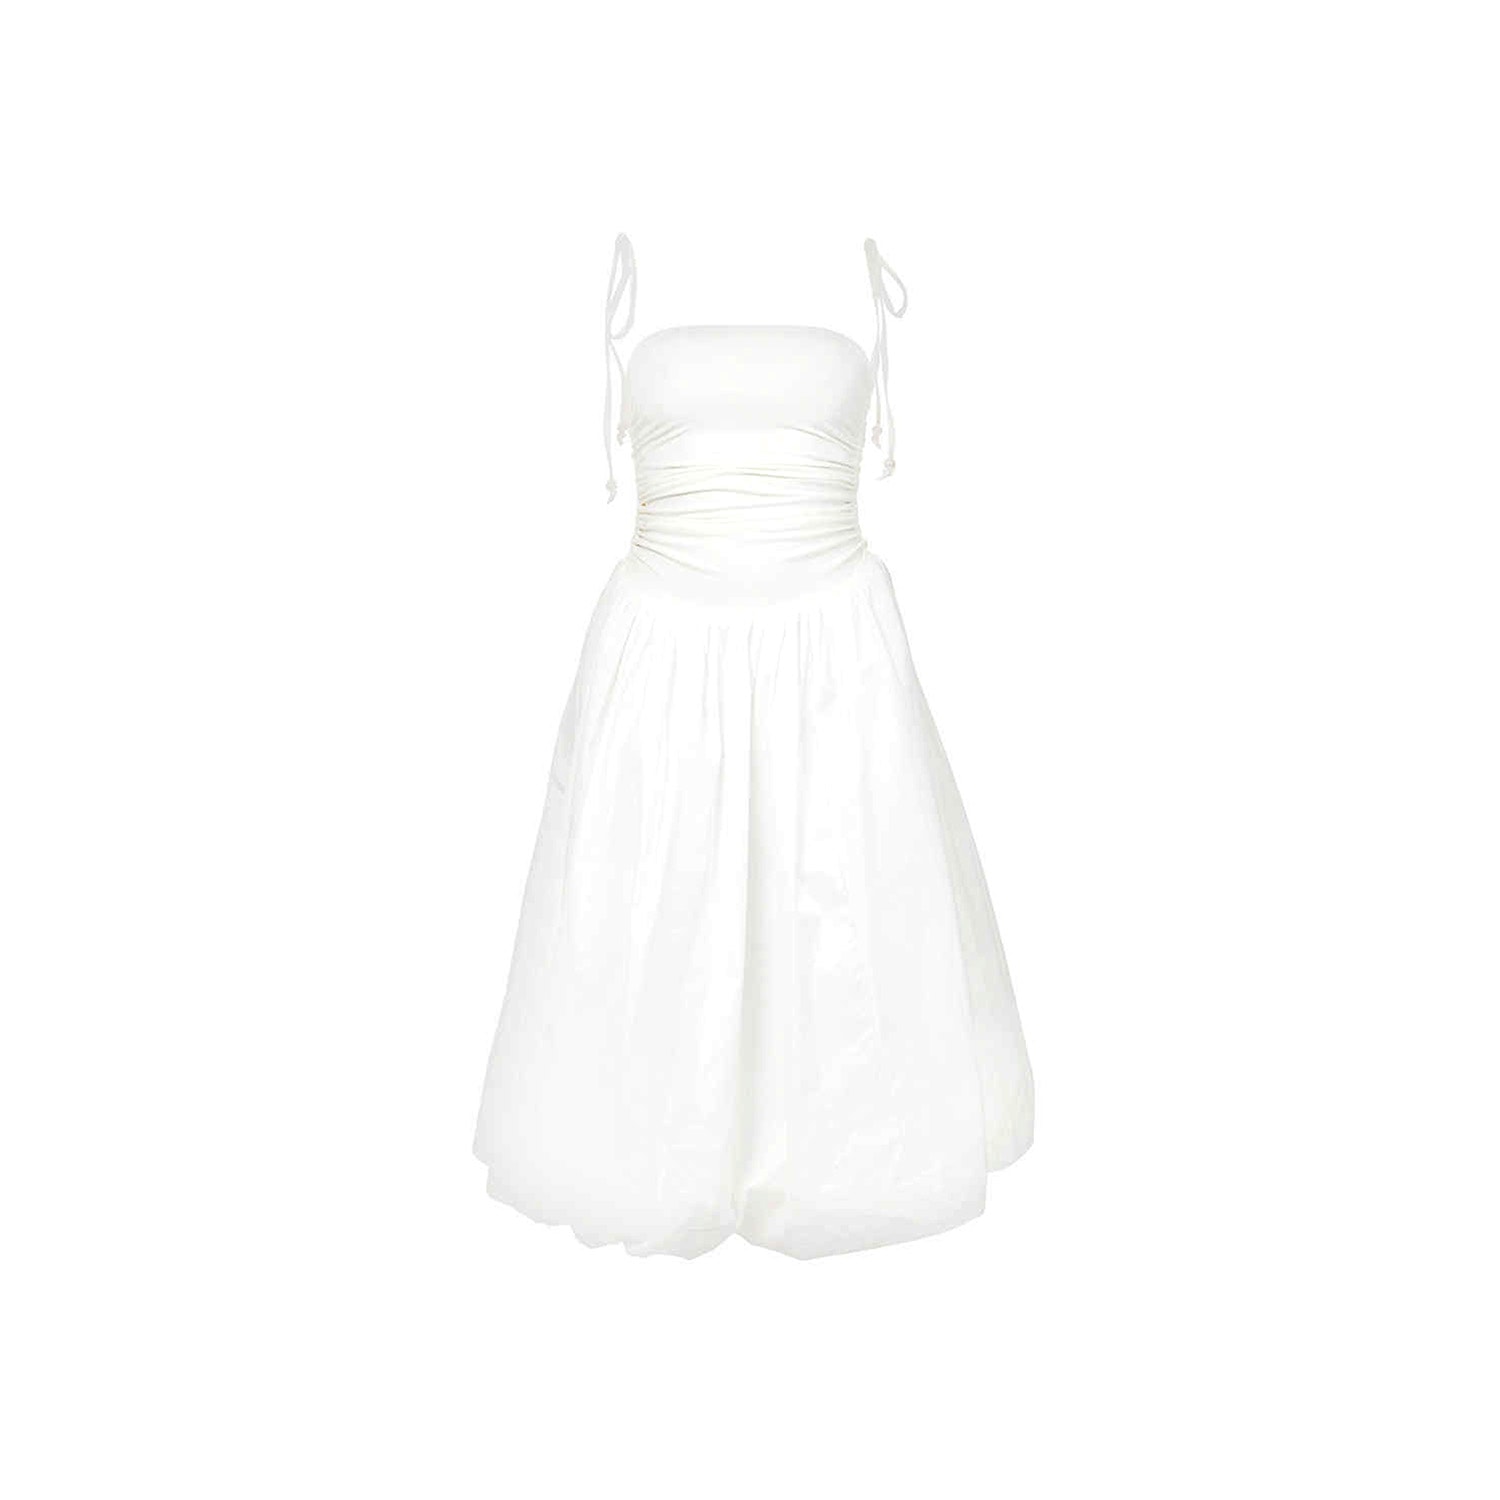 Shop Amy Lynn Women's Alexa White Puffball Dress